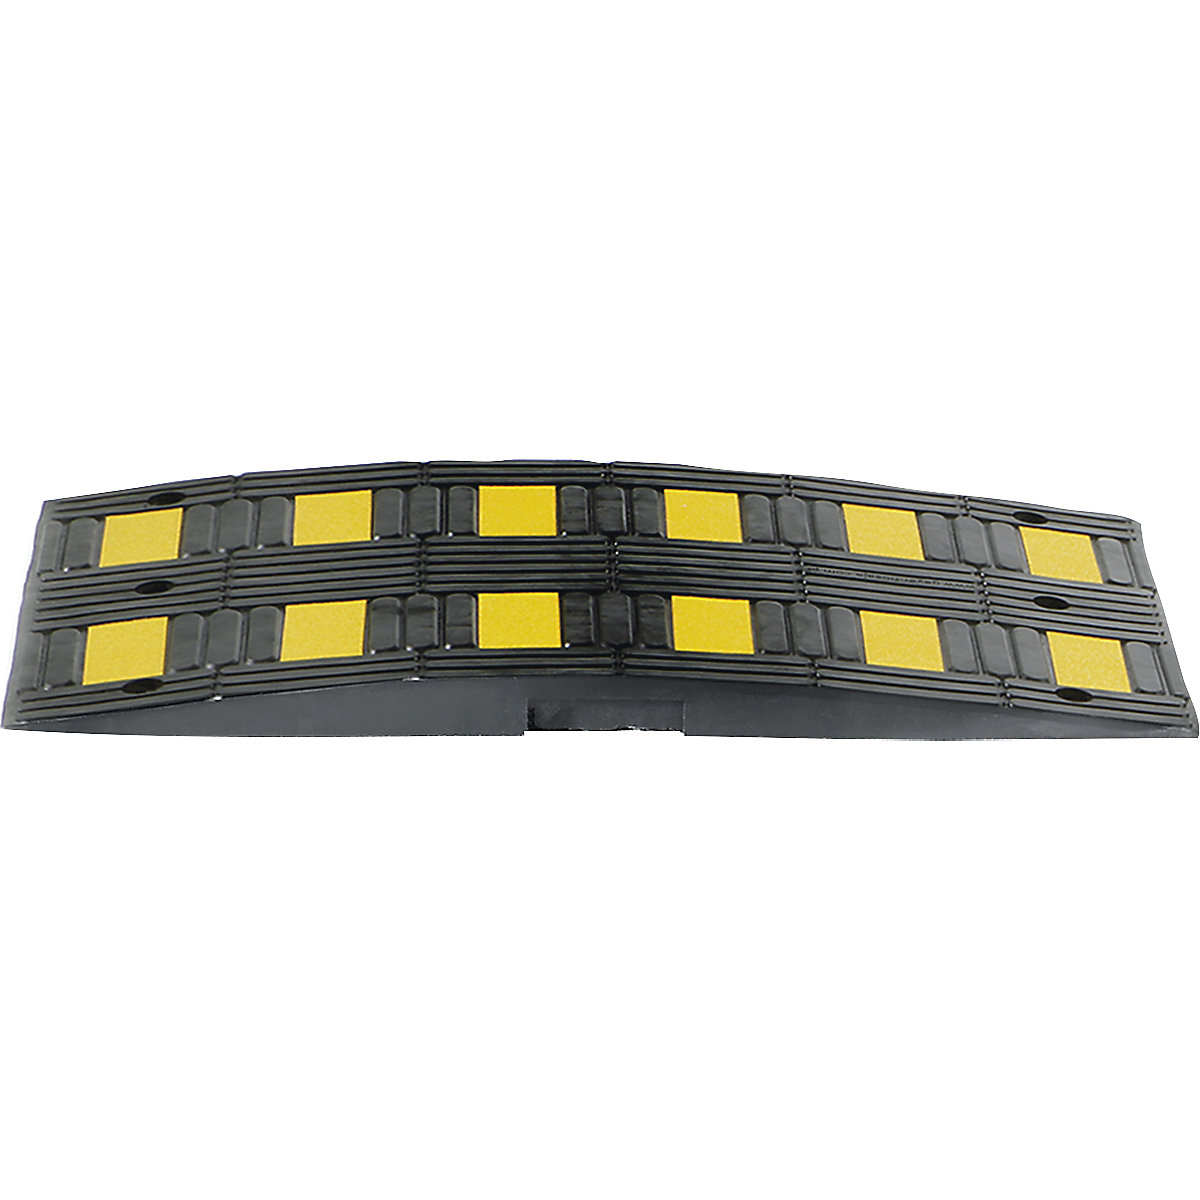 Verkeersdrempel gemaakt van gerecycled rubber, geel / zwart, voor richtsnelheid max. 30 km/h-4